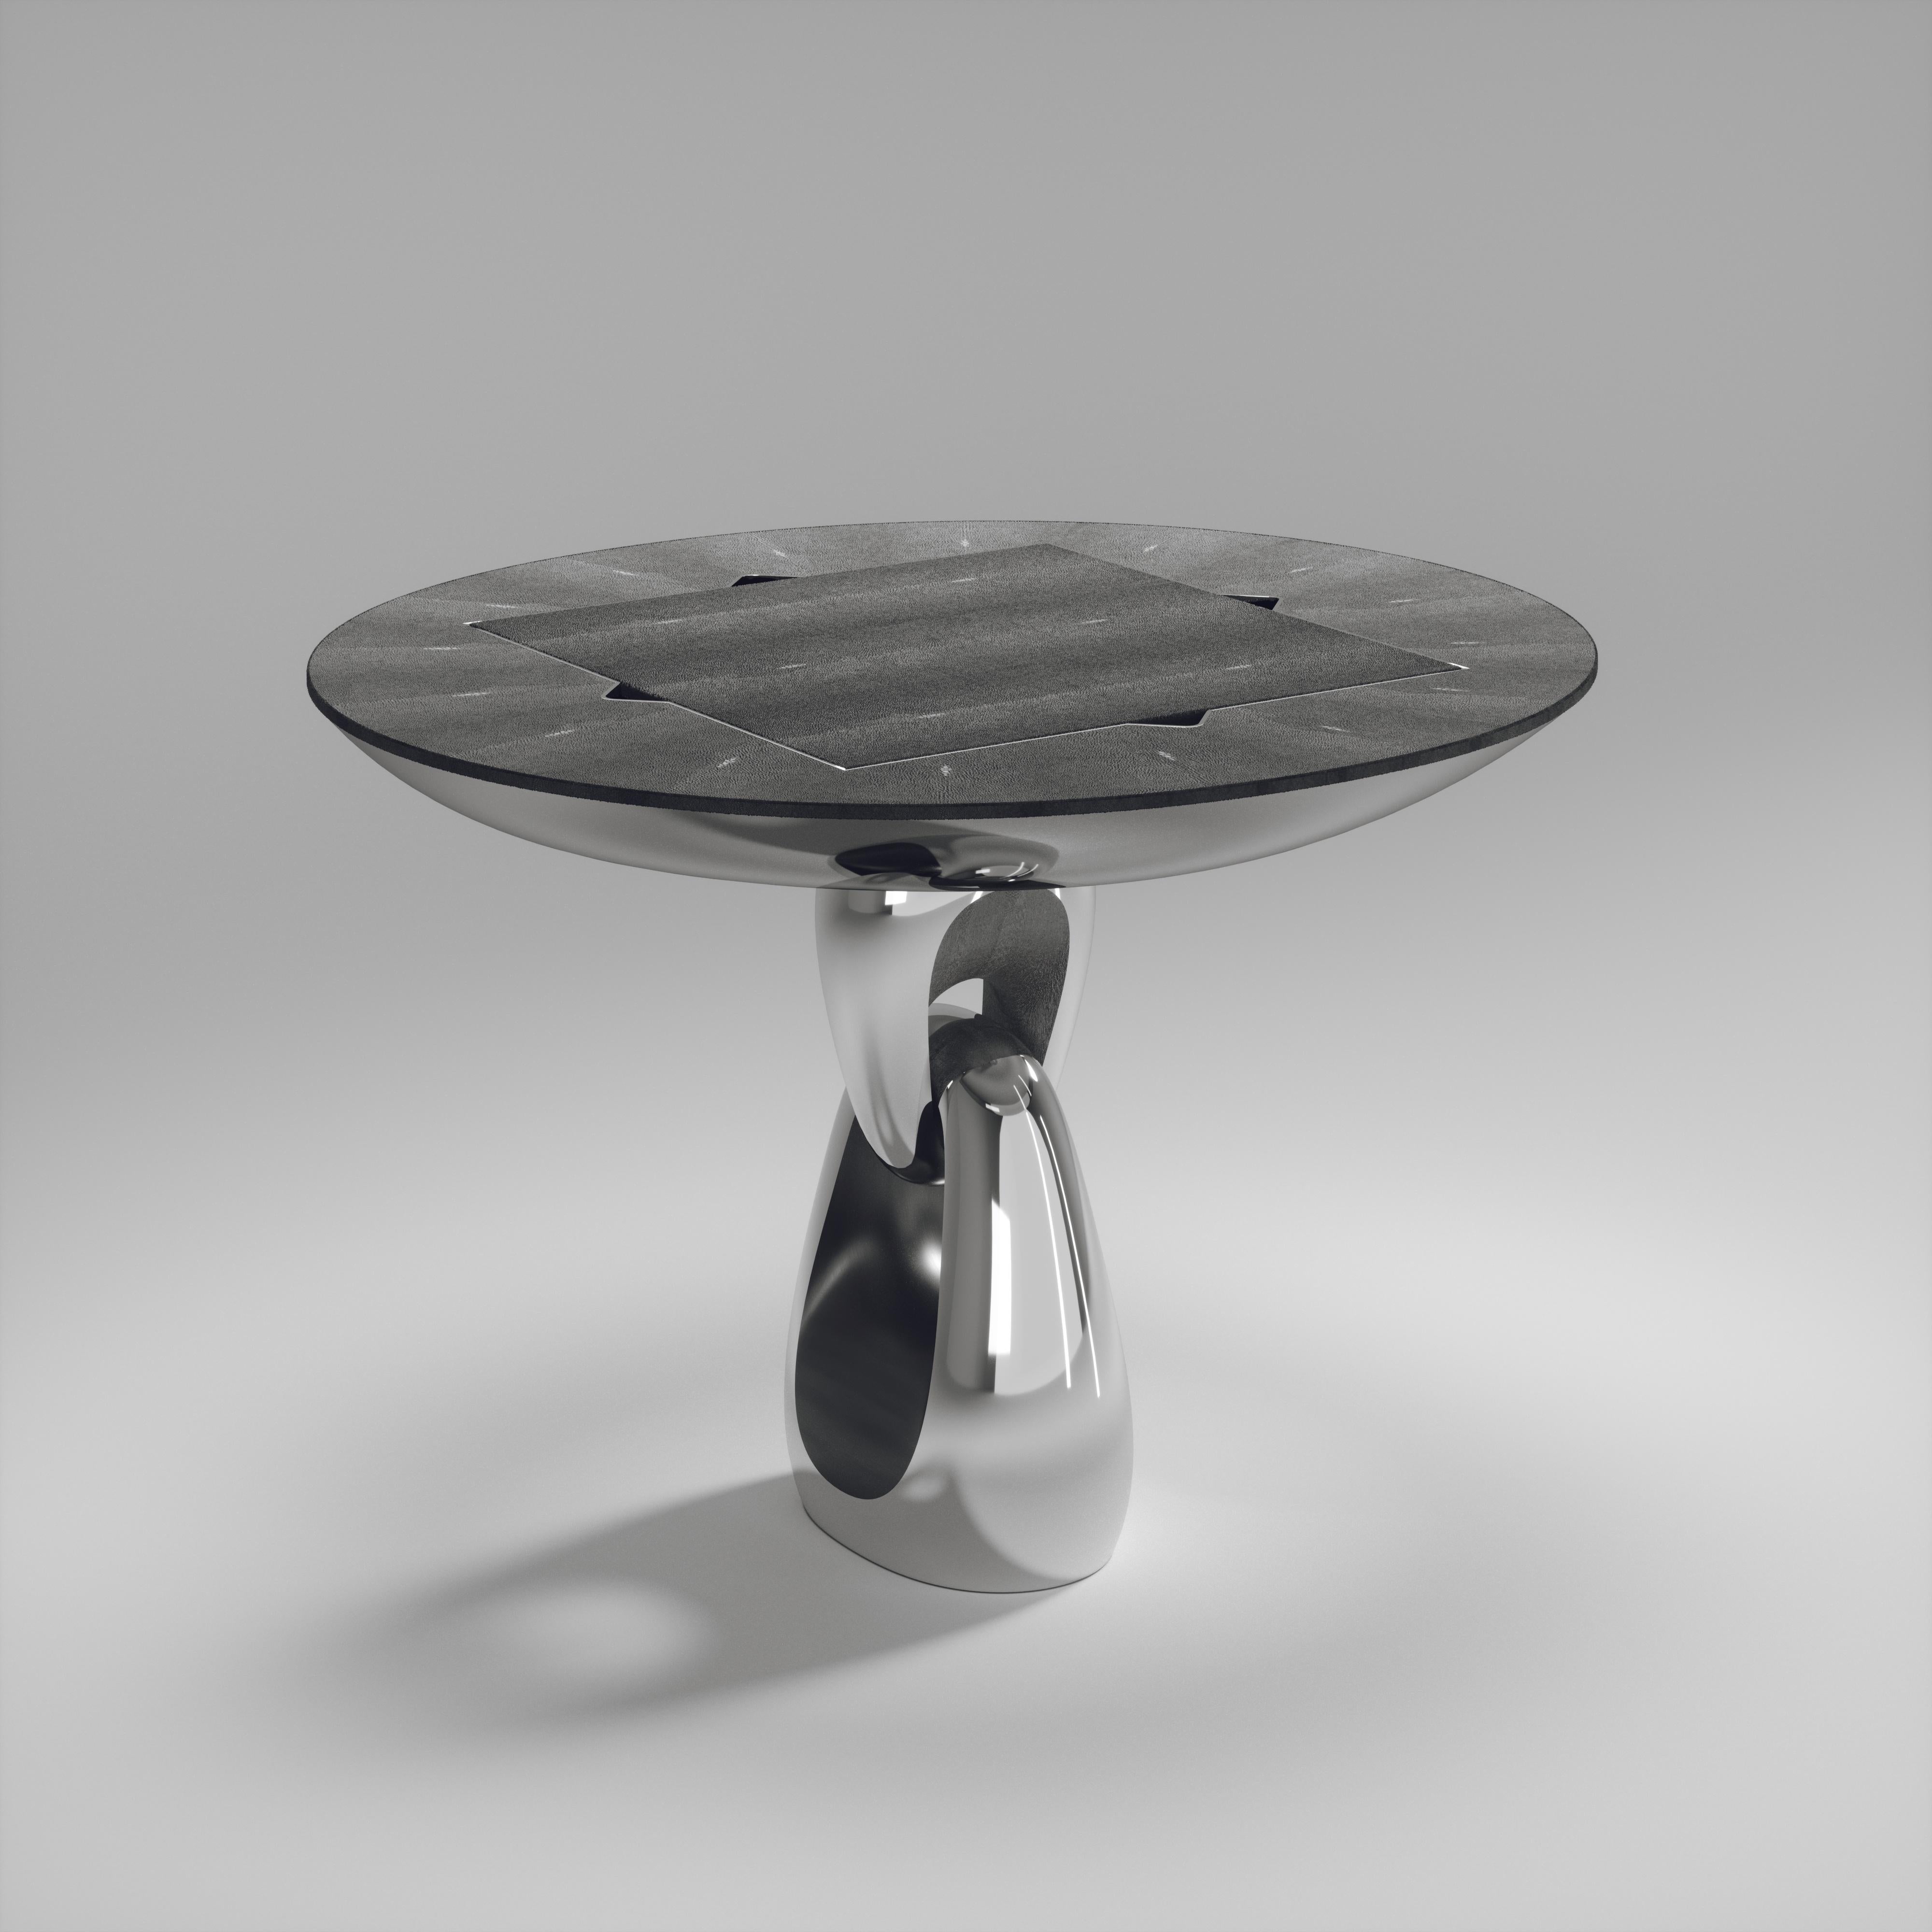 Der 4 in 1 Saturn Spieltisch R&Y Augousti ist ein wahrhaft luxuriöses Schmuckstück für Ihr Zuhause. Die klaren Linien des gesamten Möbelstücks in schwarzem Chagrin, akzentuiert durch den skulpturalen und eleganten Sockel aus poliertem Edelstahl in